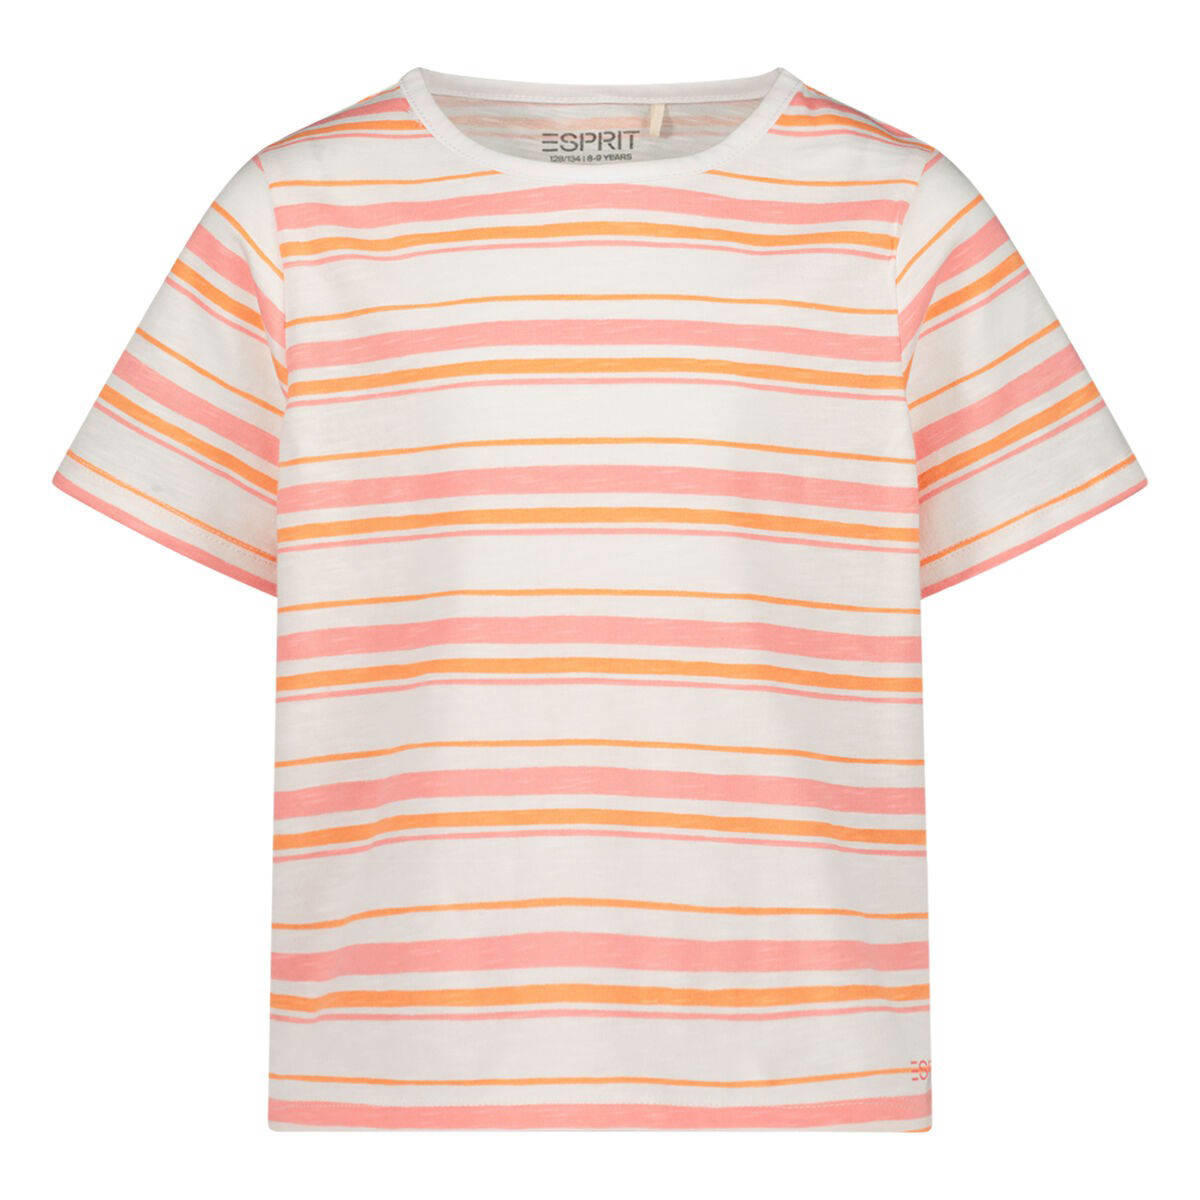 ESPRIT gestreept T-shirt oranje/roze/wit | kleertjes.com